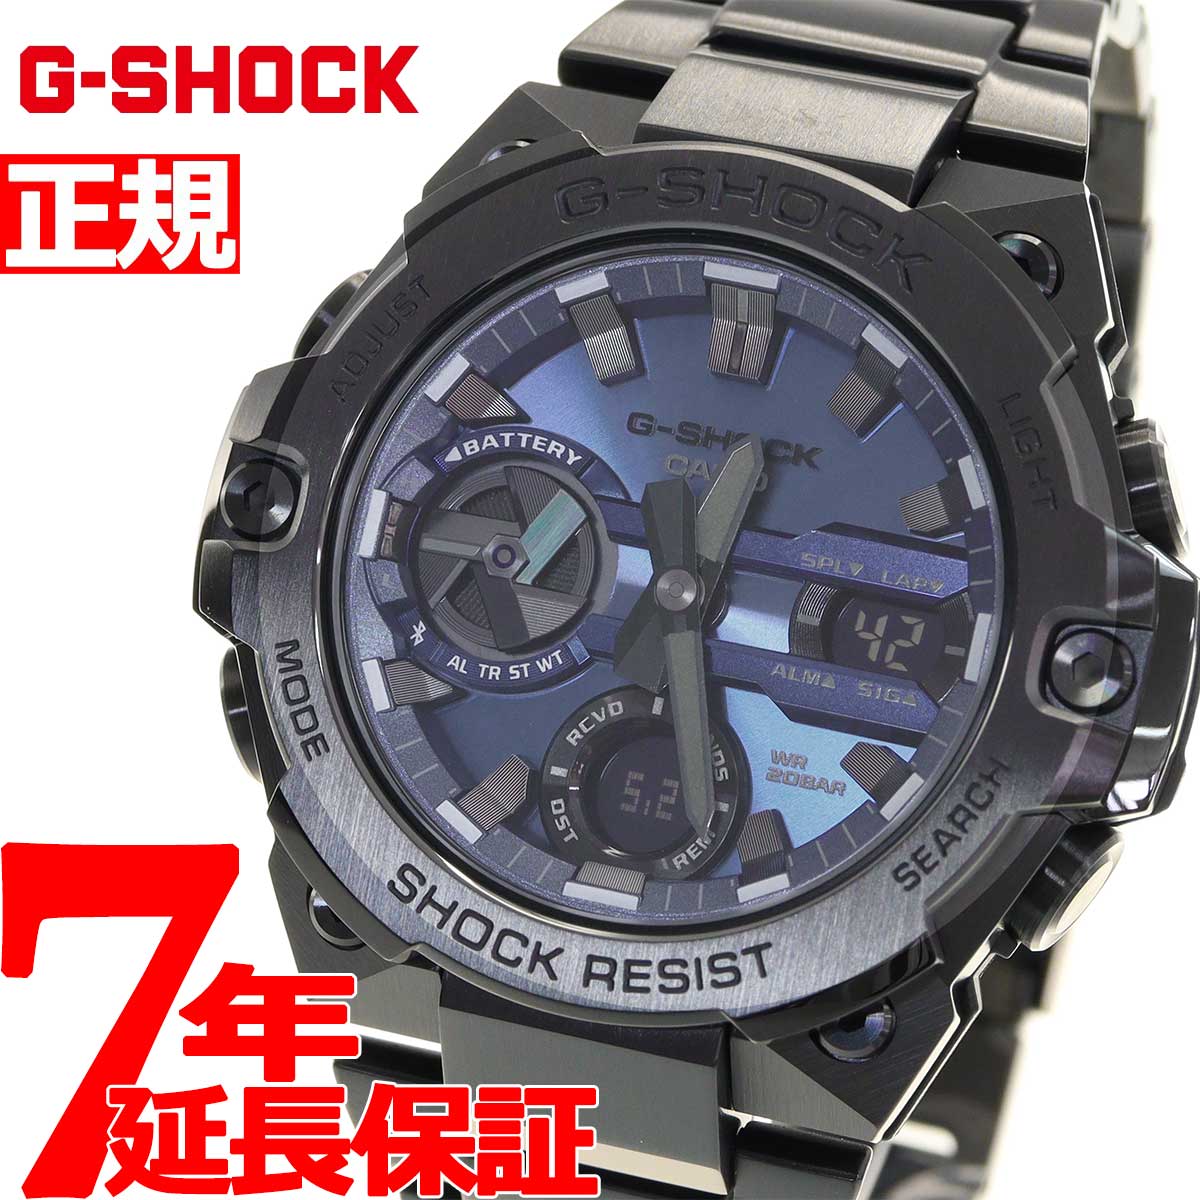 G-SHOCK Gショック アナログ デジタル タフソーラー ジーショック G-STEEL Gスチール GST-B400BD-1A2JF 時計  bluetooth 黒 アナデジ